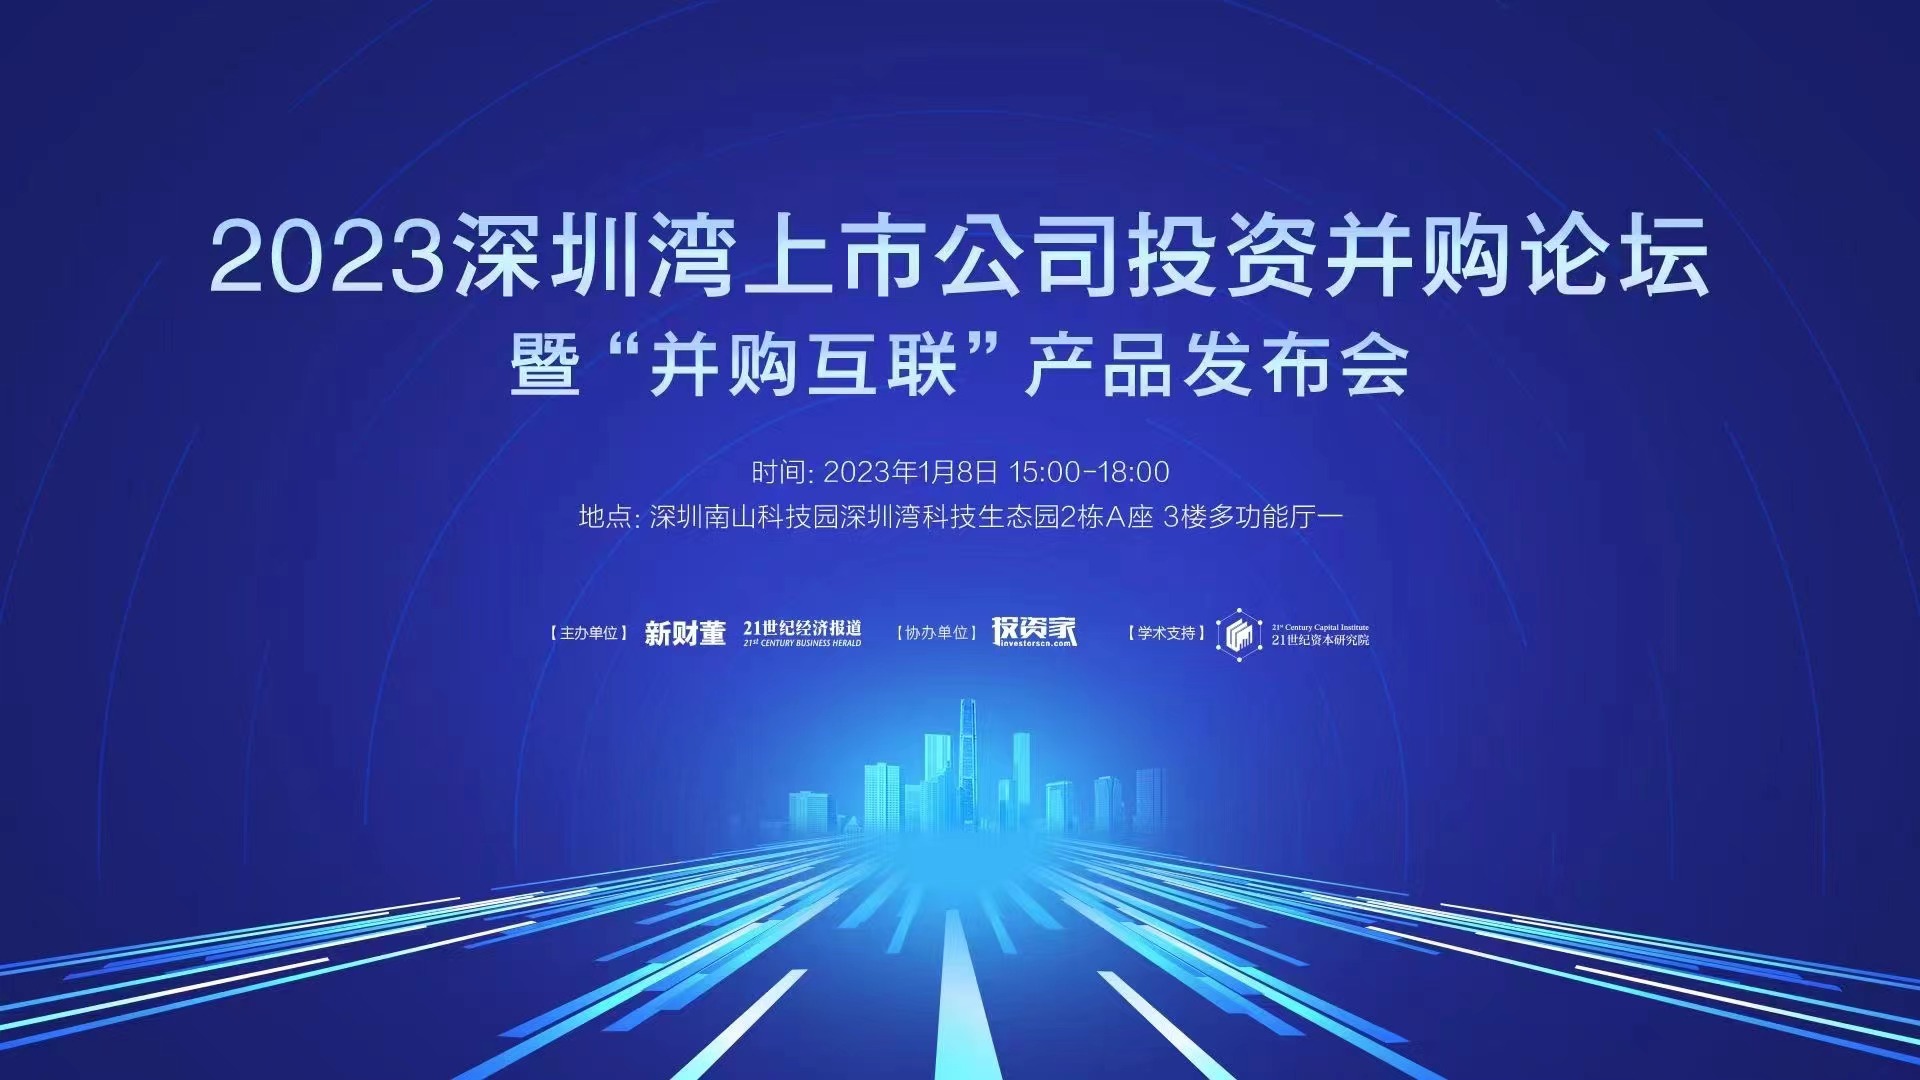 投资家网联合创始人蒋冬敏受邀出席“深圳湾上市公司投资并购论坛”